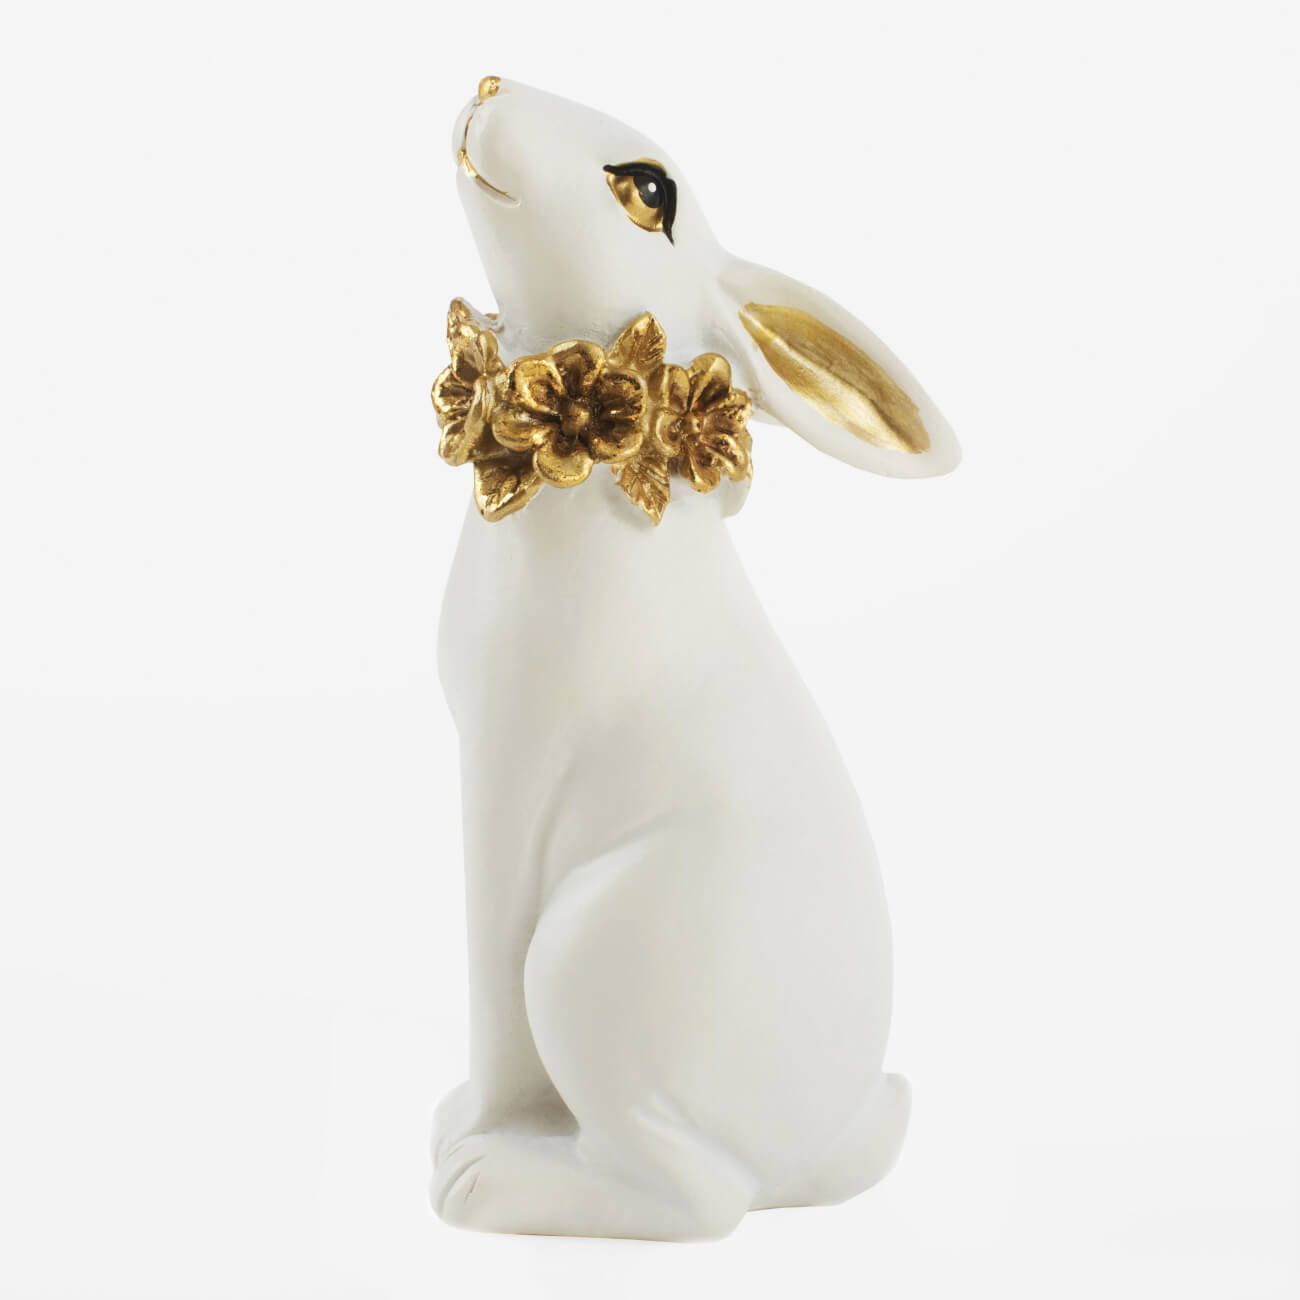 Статуэтка, 13 см, полирезин, бело-золотистая, Кролик с цветочным ожерельем, Easter gold статуэтка 13 см полирезин бело золотистая кролик с очным ожерельем easter gold